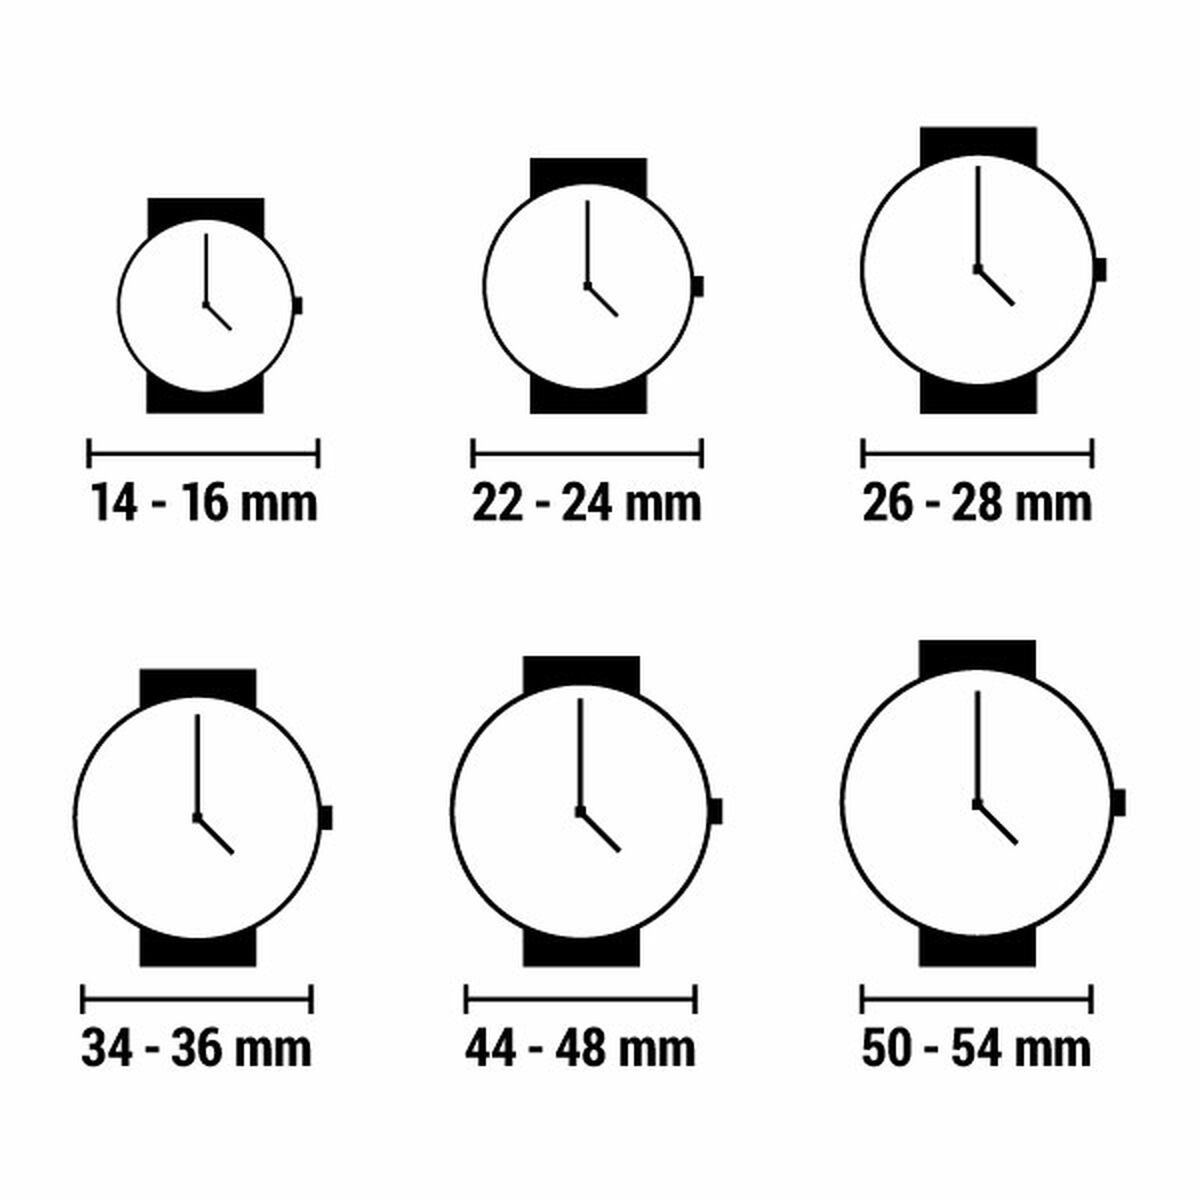 Horloge Dames Lorus RG249WX9